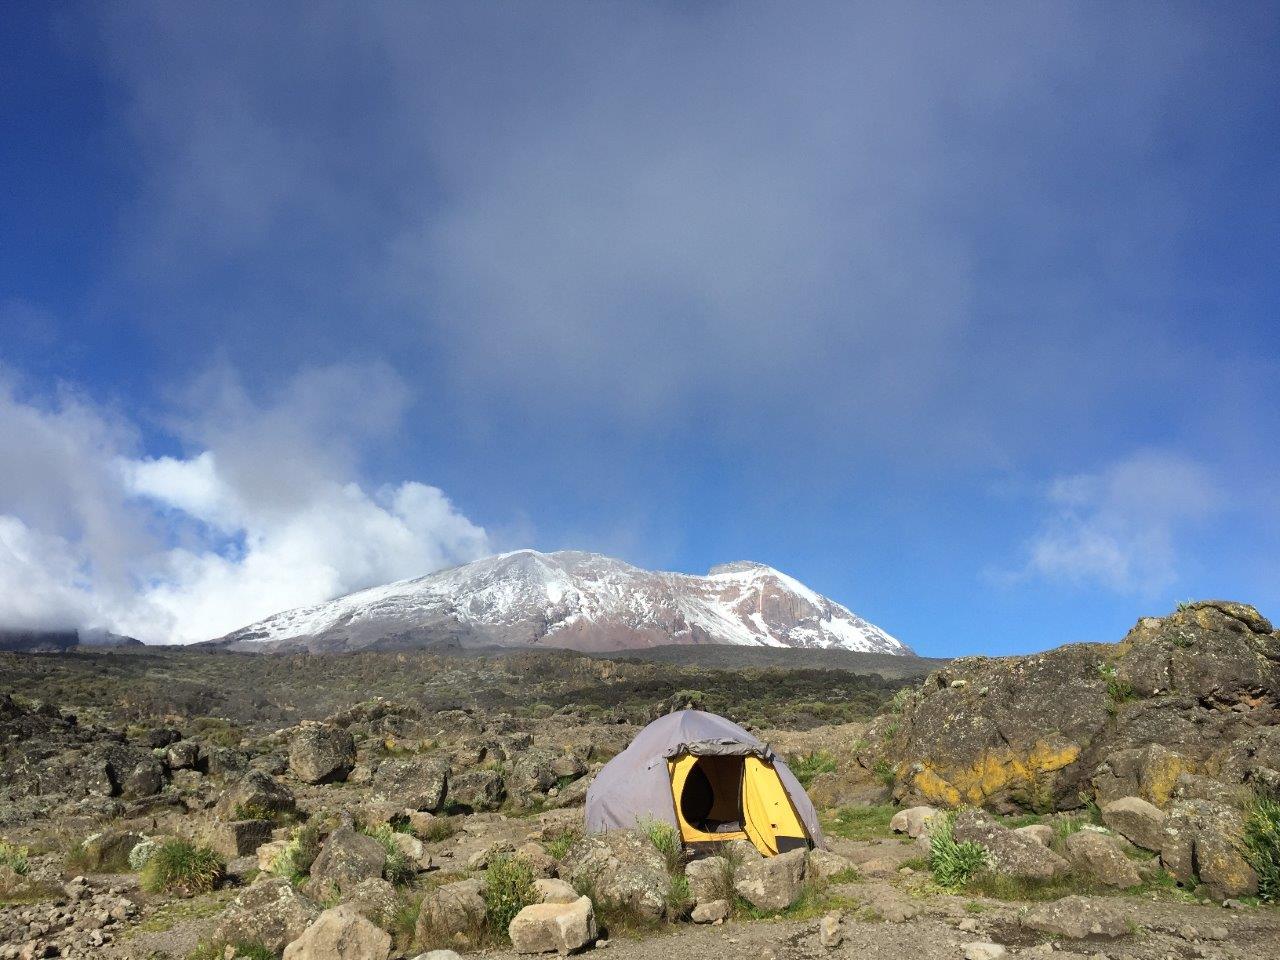 Mt Kenya Mt Kilimanjaro climb gears